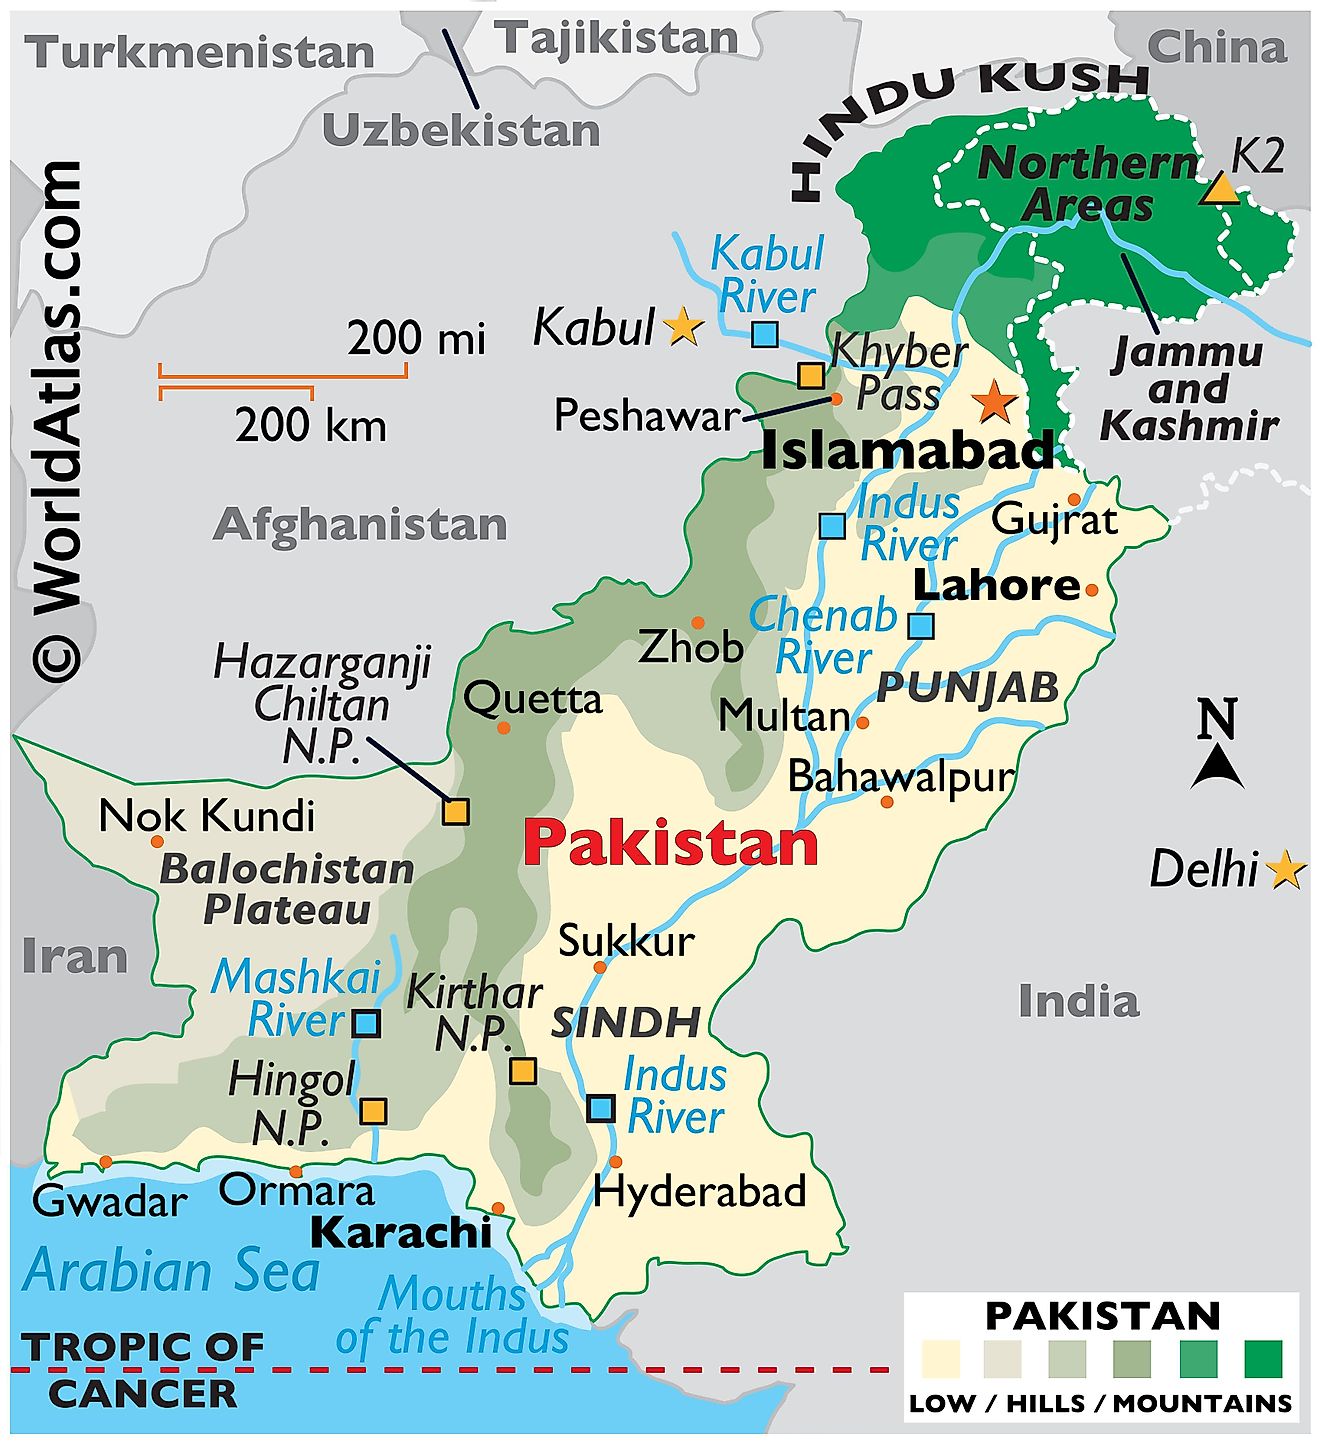 Mapa físico de Pakistán que muestra los límites estatales, el relieve, el monte K2, el río Indo y sus afluentes, ciudades importantes y más.